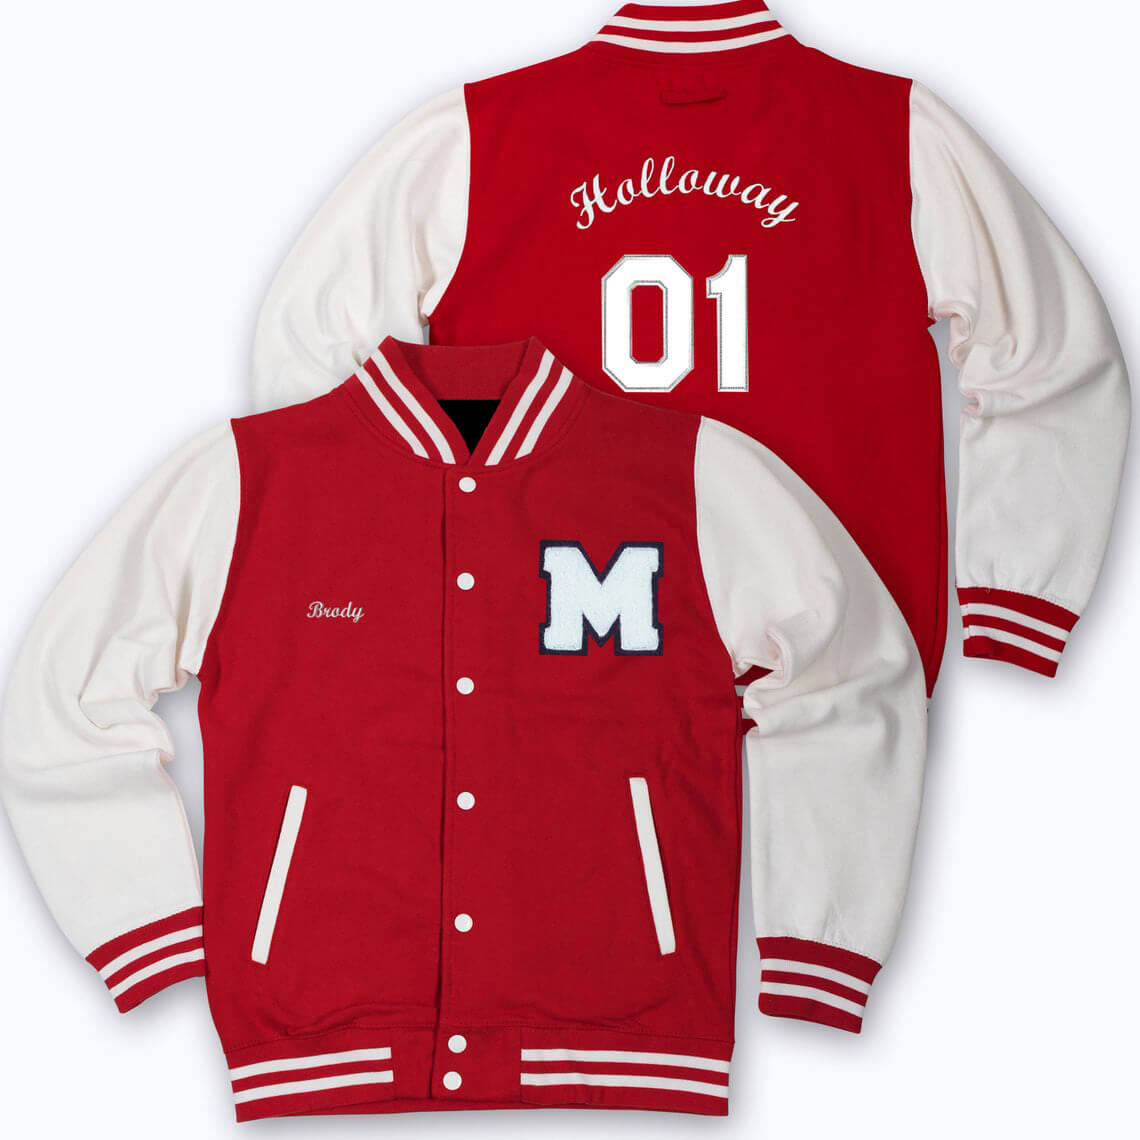 Maker of Jacket Varsity Jackets Red White M Letterman Baseball